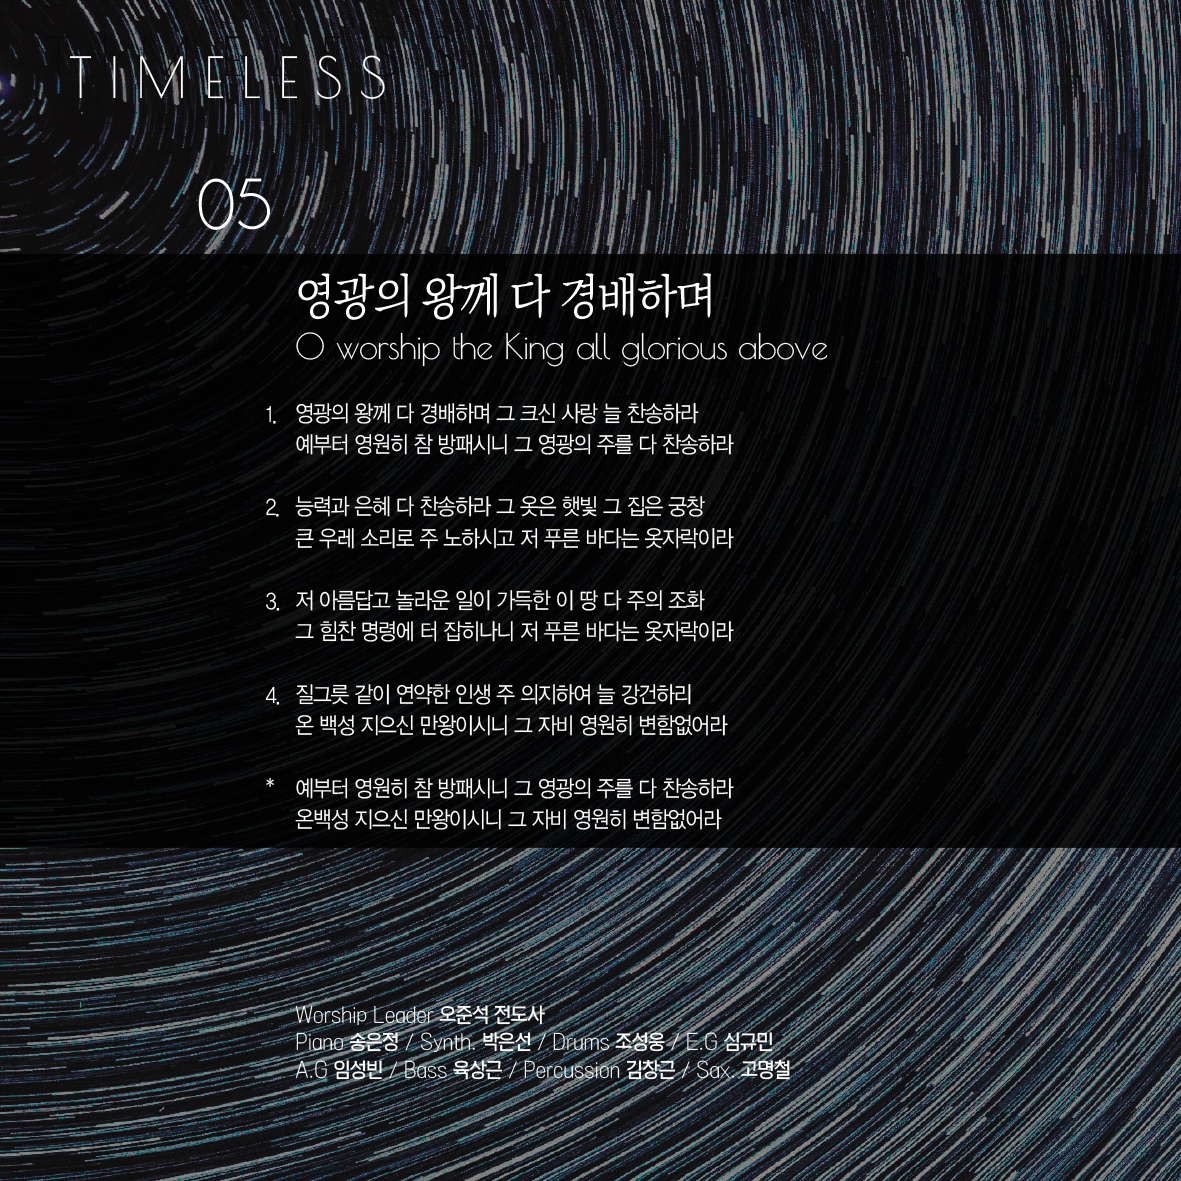 사랑의교회 쉐키나 찬양단 - 사랑의교회 쉐키나 Hymns Live 3집 'Timeless' (CD)